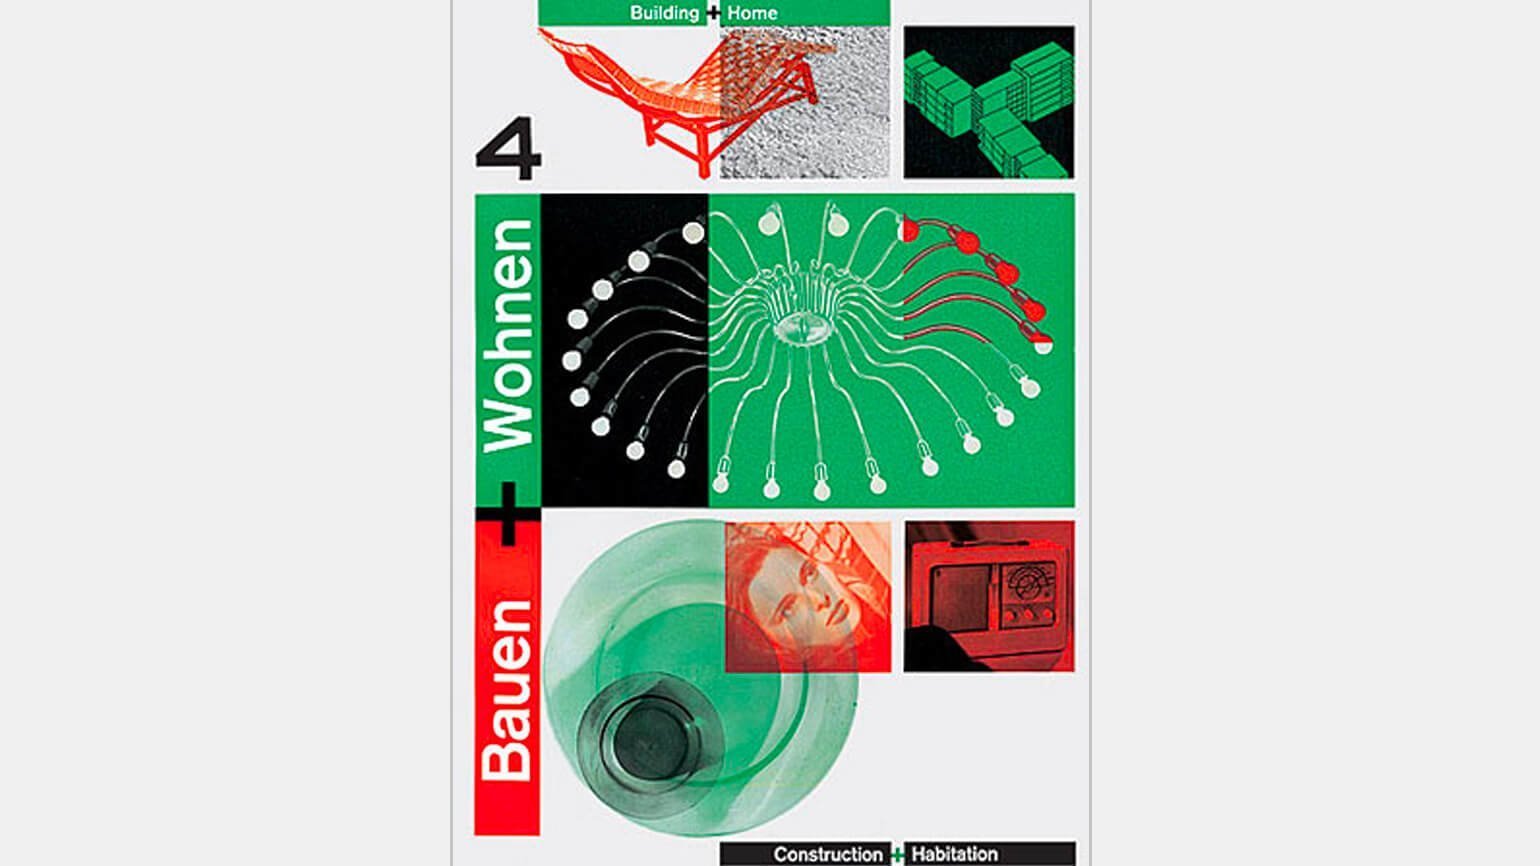 Обложка журнала с красными и зелёными прямоугольниками, красной кушеткой, белой люстрой, зеленой стеклянной посудой — пример швейцарского интернационального стиля дизайна